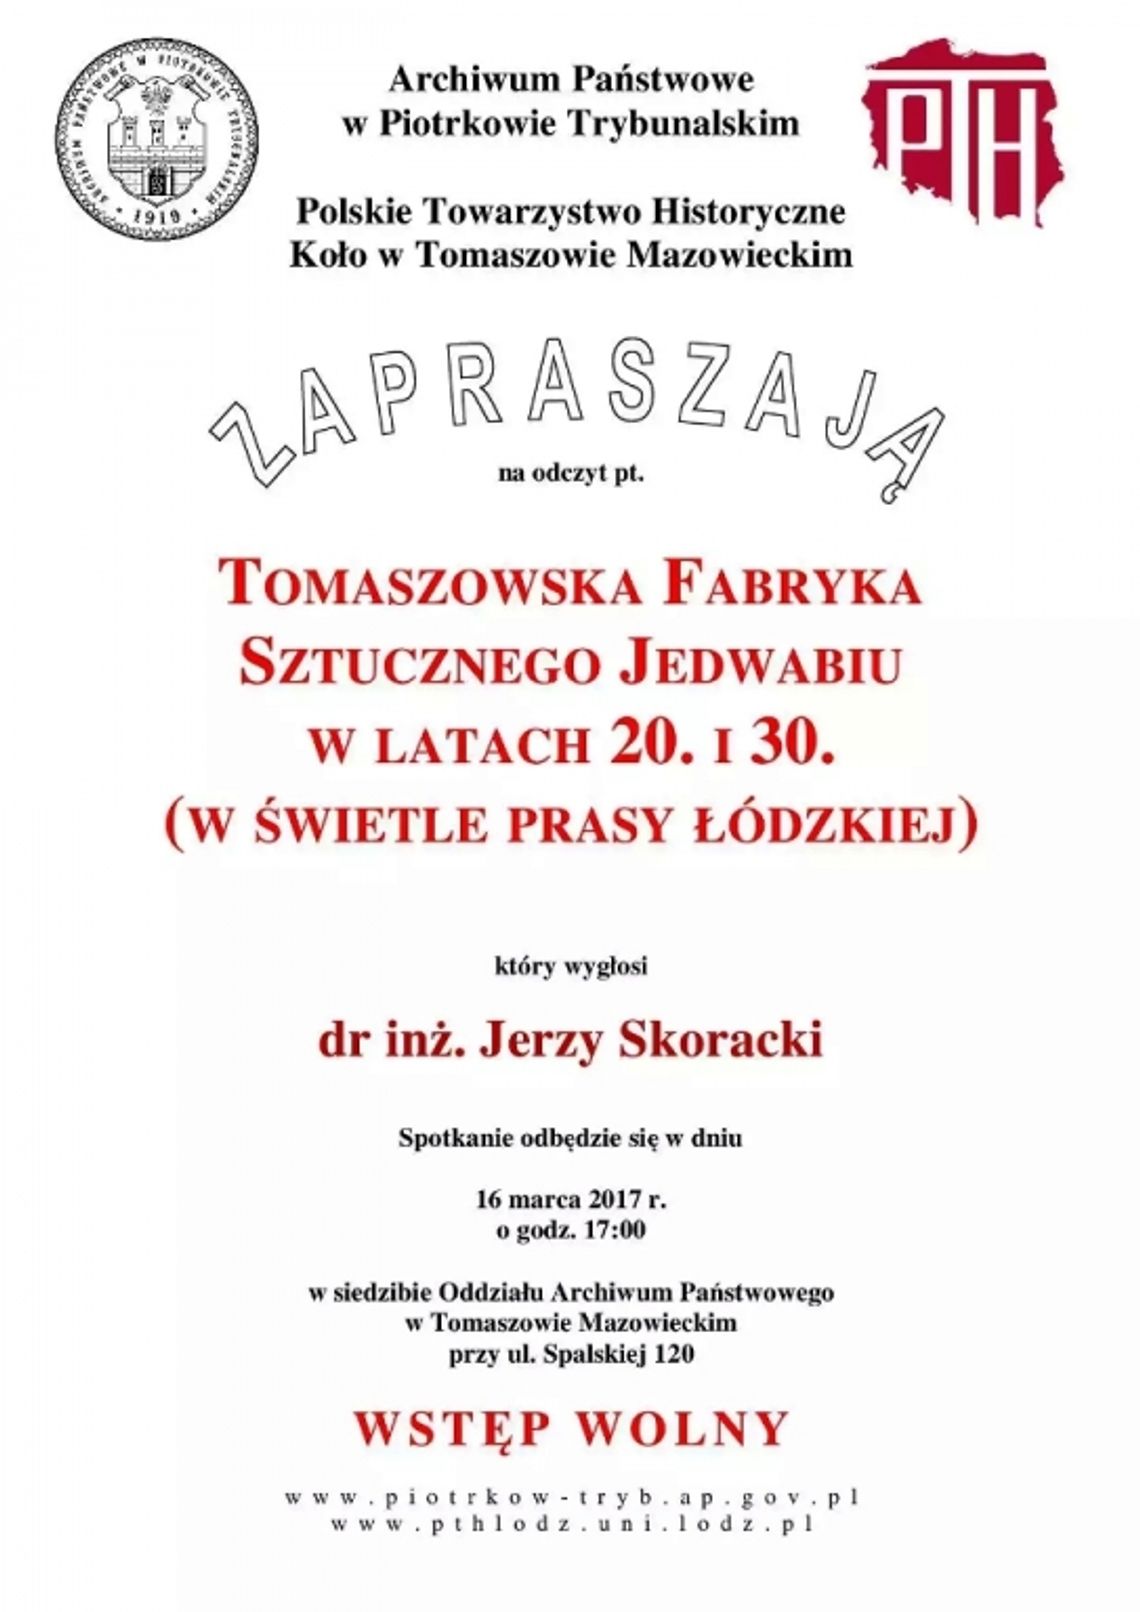 Tomaszowska Fabryka Sztucznego Jedwabiu w latach 20. i 30.